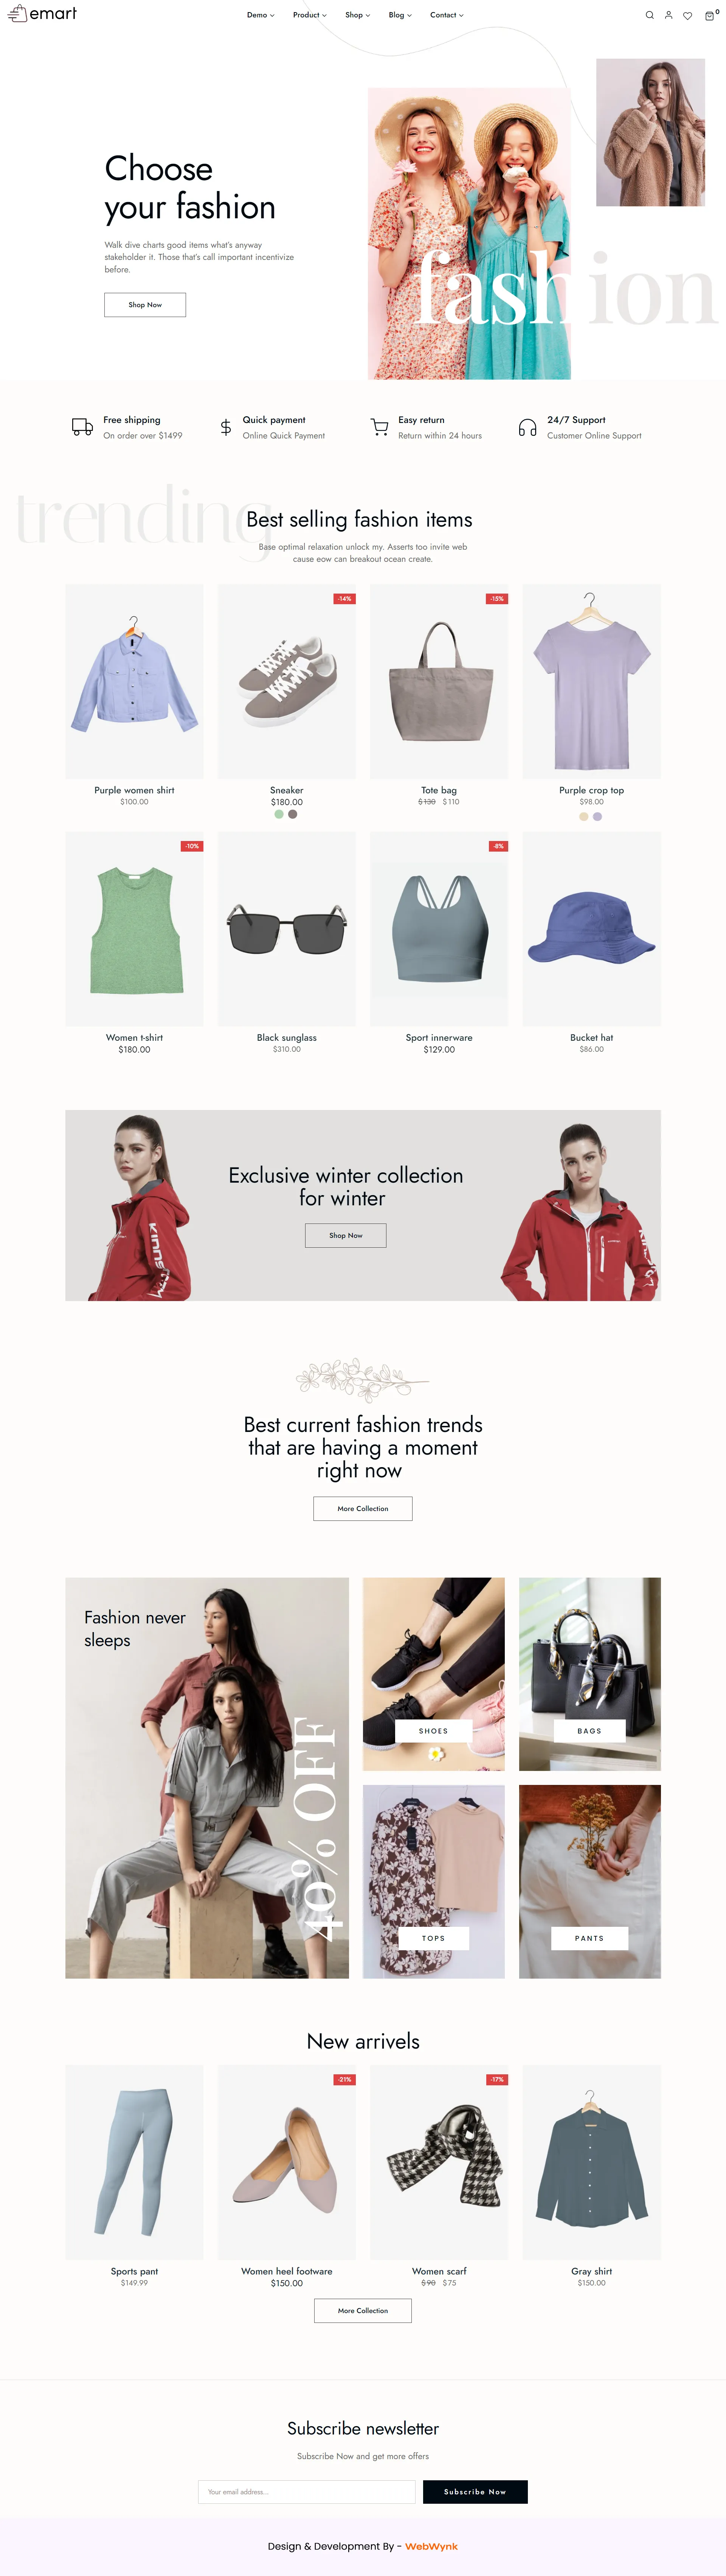 fashion-cloths-ecommerce-website-design-webwynk